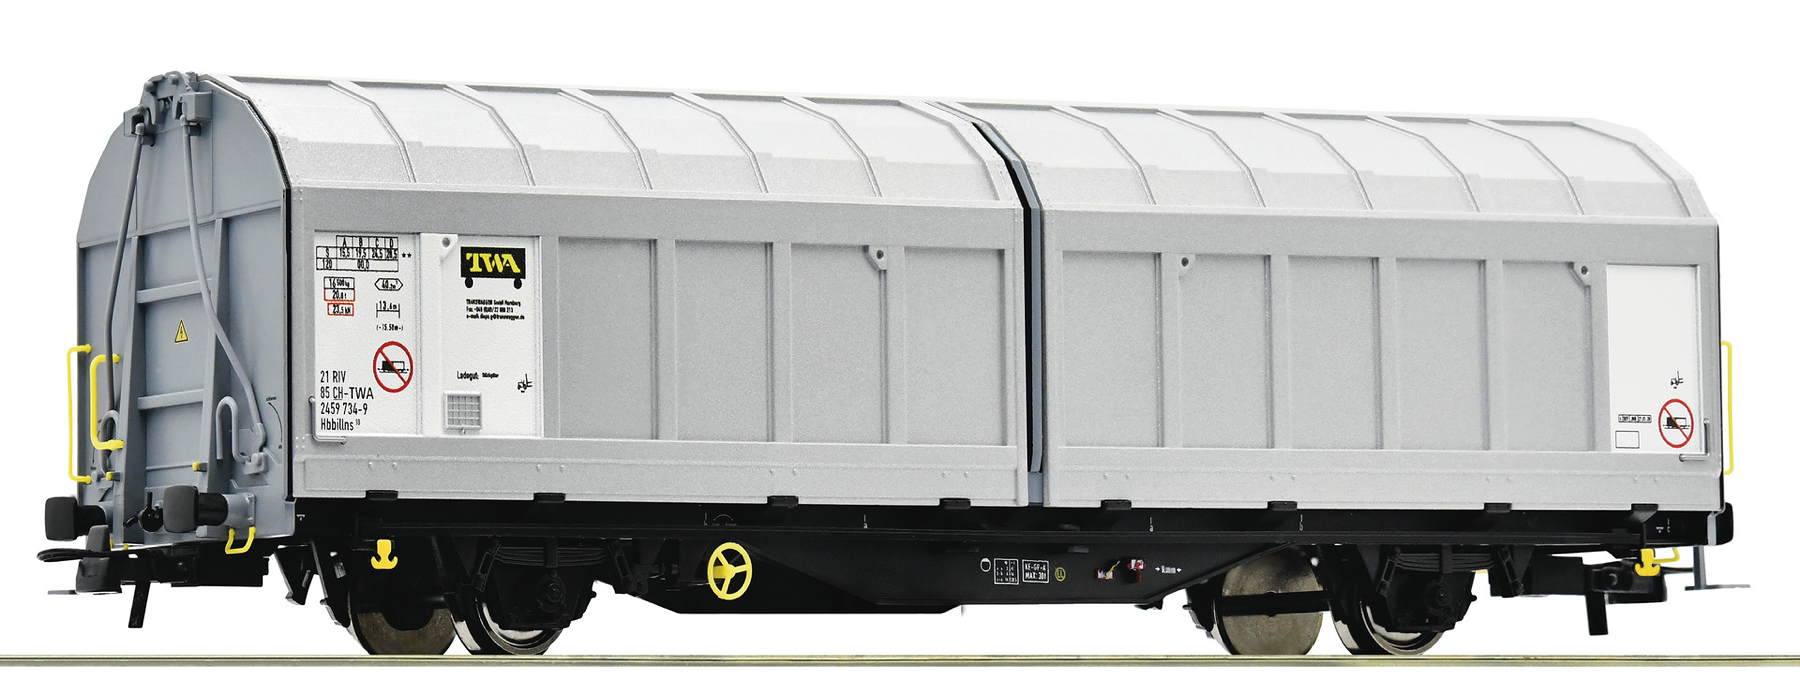 Schiebewandwagen, Transwaggon/SBB Cargo - Bild 1